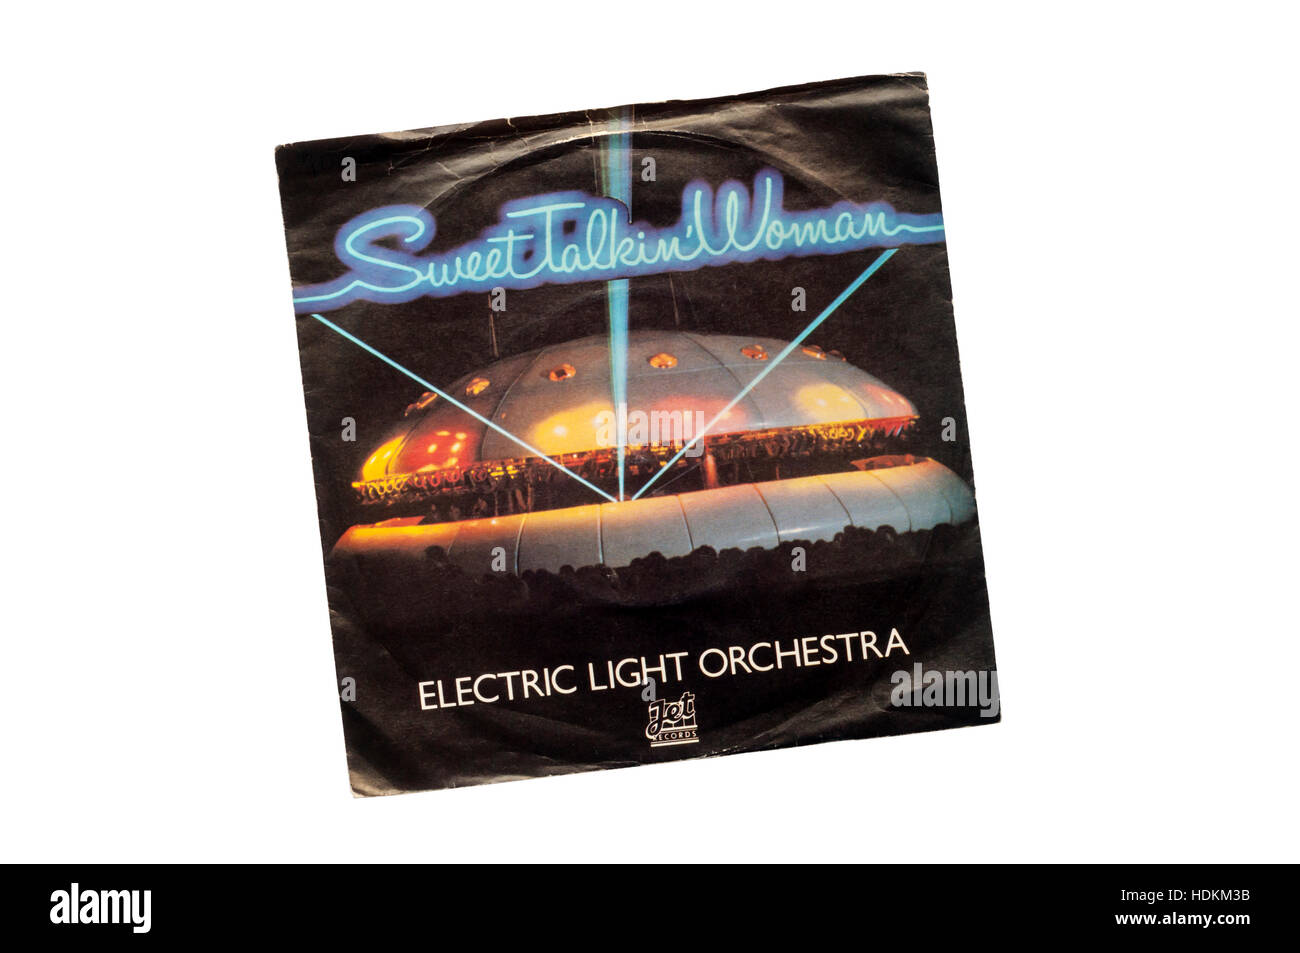 Sweet Talkin' donna da Electric Light Orchestra rilasciato nel 1978 sull'etichetta a getto. Foto Stock